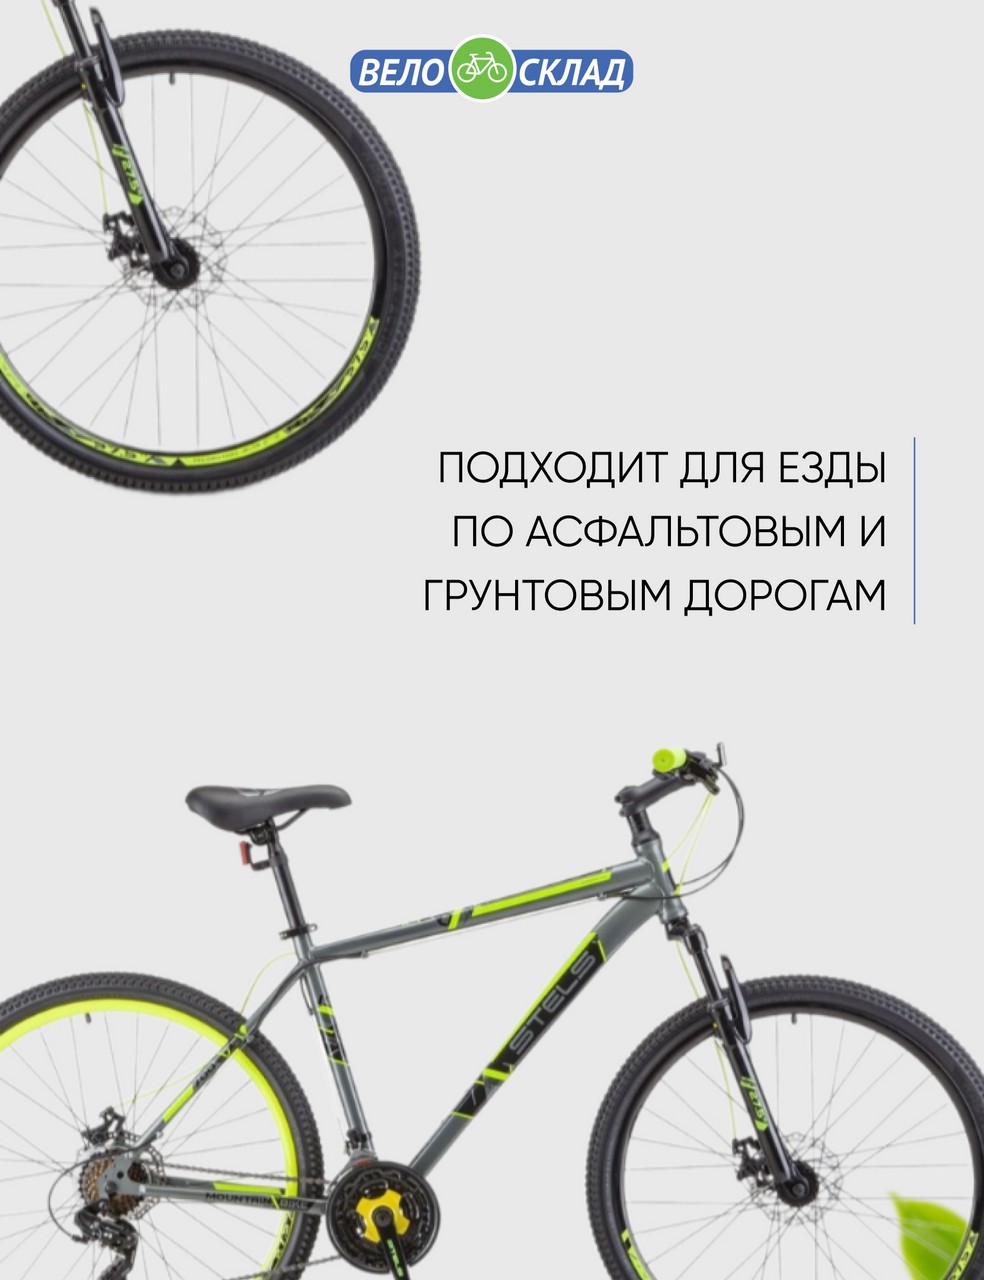 Горный велосипед Stels Navigator 700 MD 27.5 F020, год 2023, цвет Серебристый-Желтый, ростовка 21